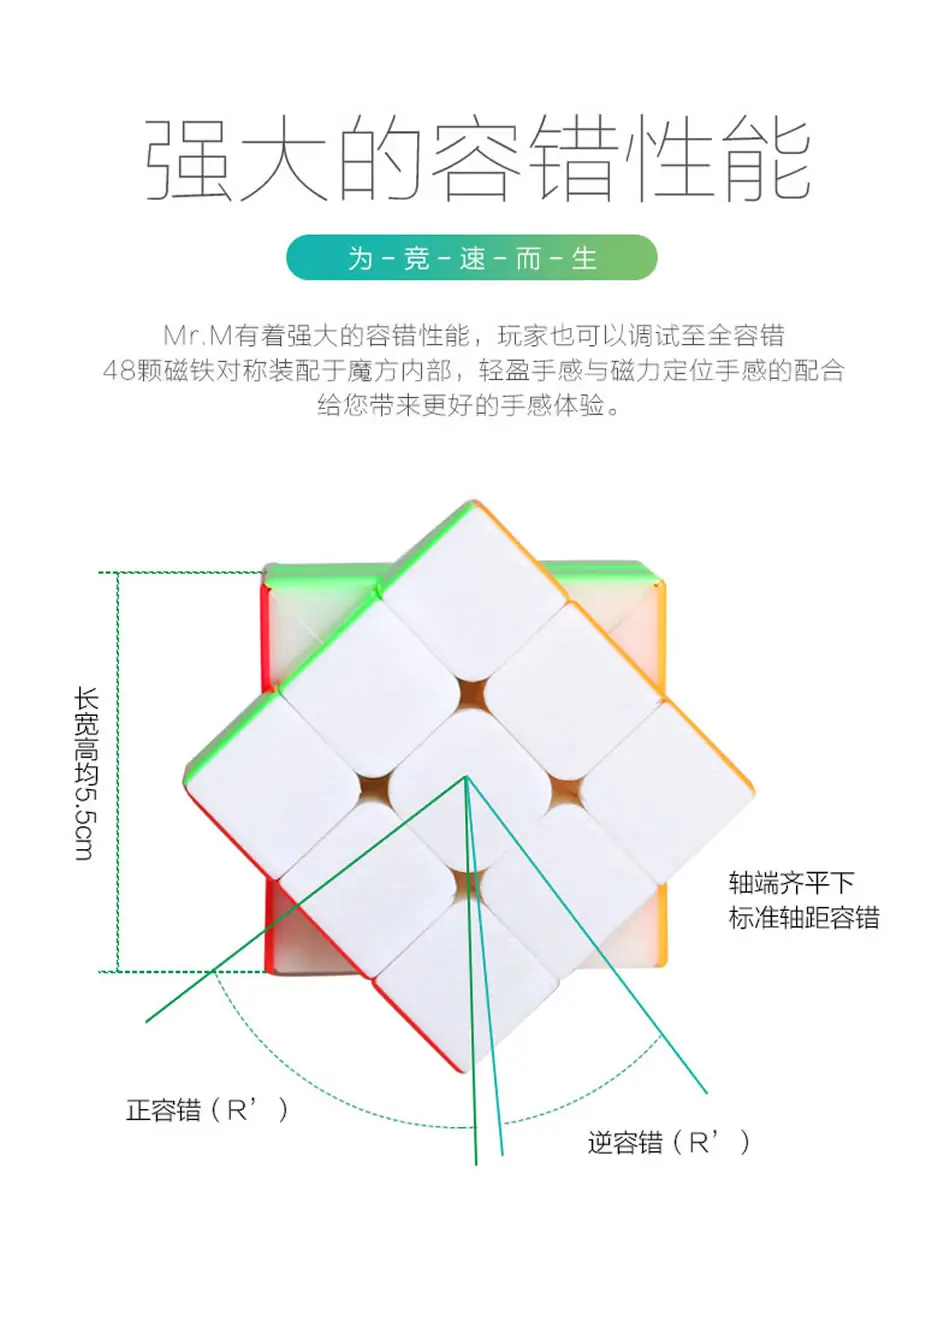 Оригинал высокое качество ShengShou Mr. M 3x3x3 Магнитный магический куб SengSo 3x3 магниты скоростная головоломка Рождественский подарок идеи детские